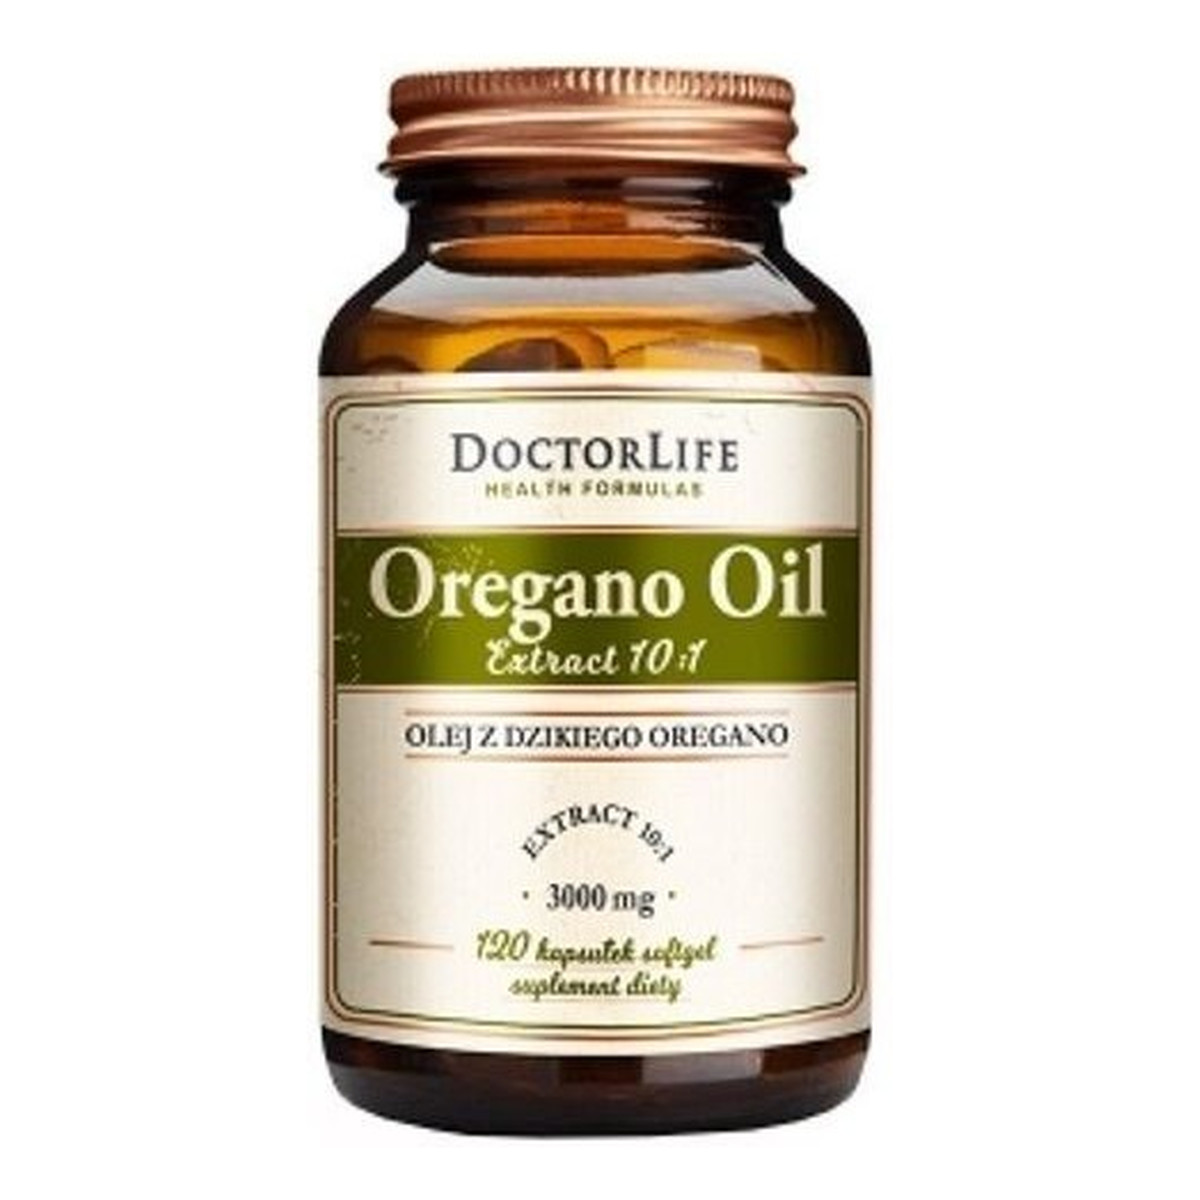 Doctor Life Oregano Oil olej z dzikiego Oregano 3000mg suplement diety 120 kapsułek